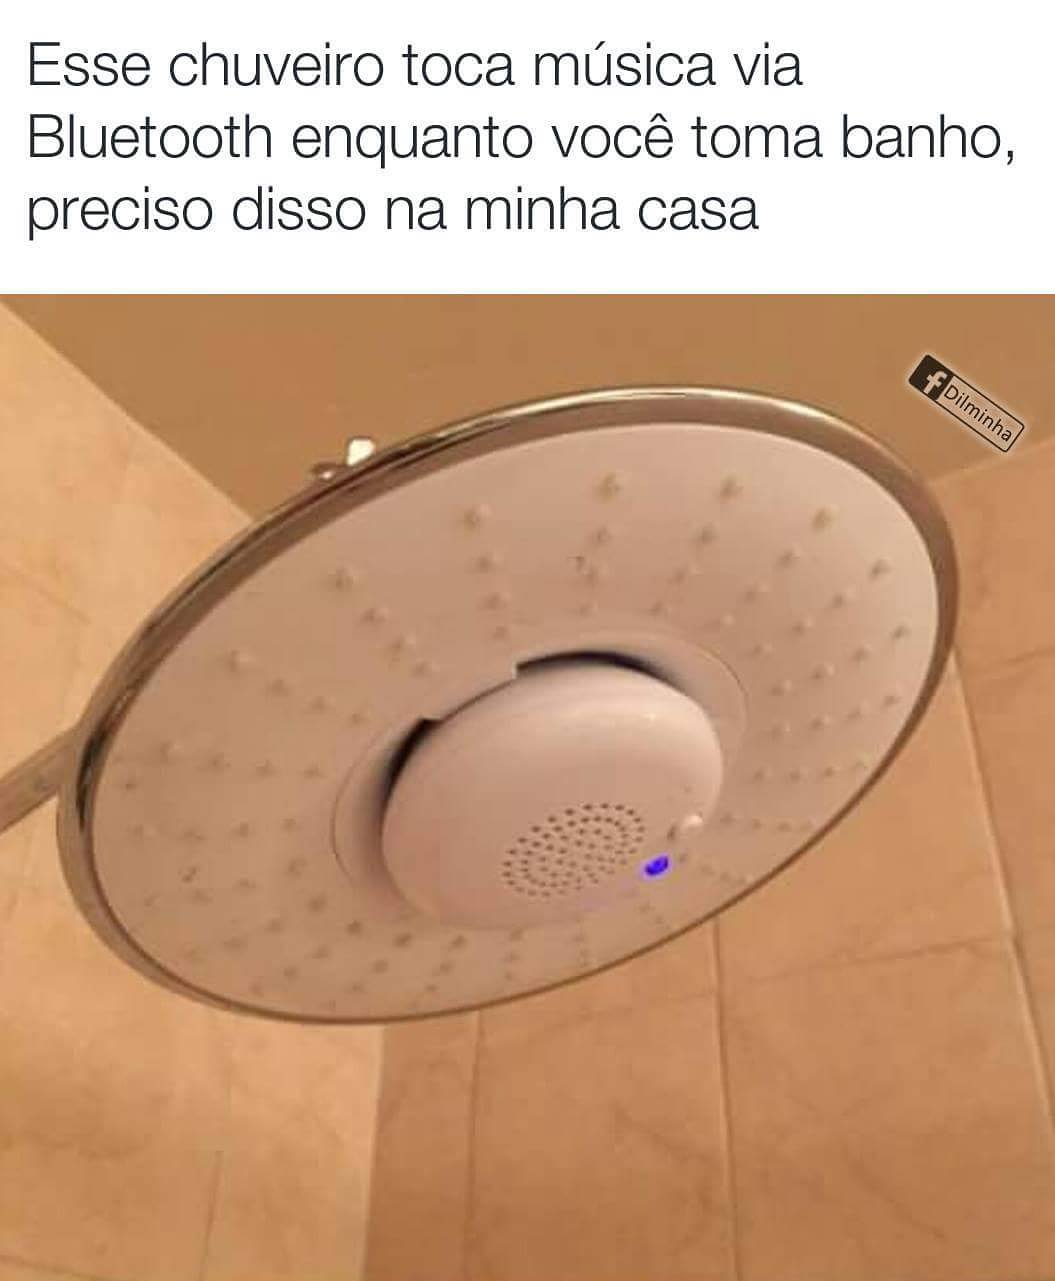 Esse chuveiro toca música via Bluetooth enquanto você toma banho, preciso disso na minha casa.